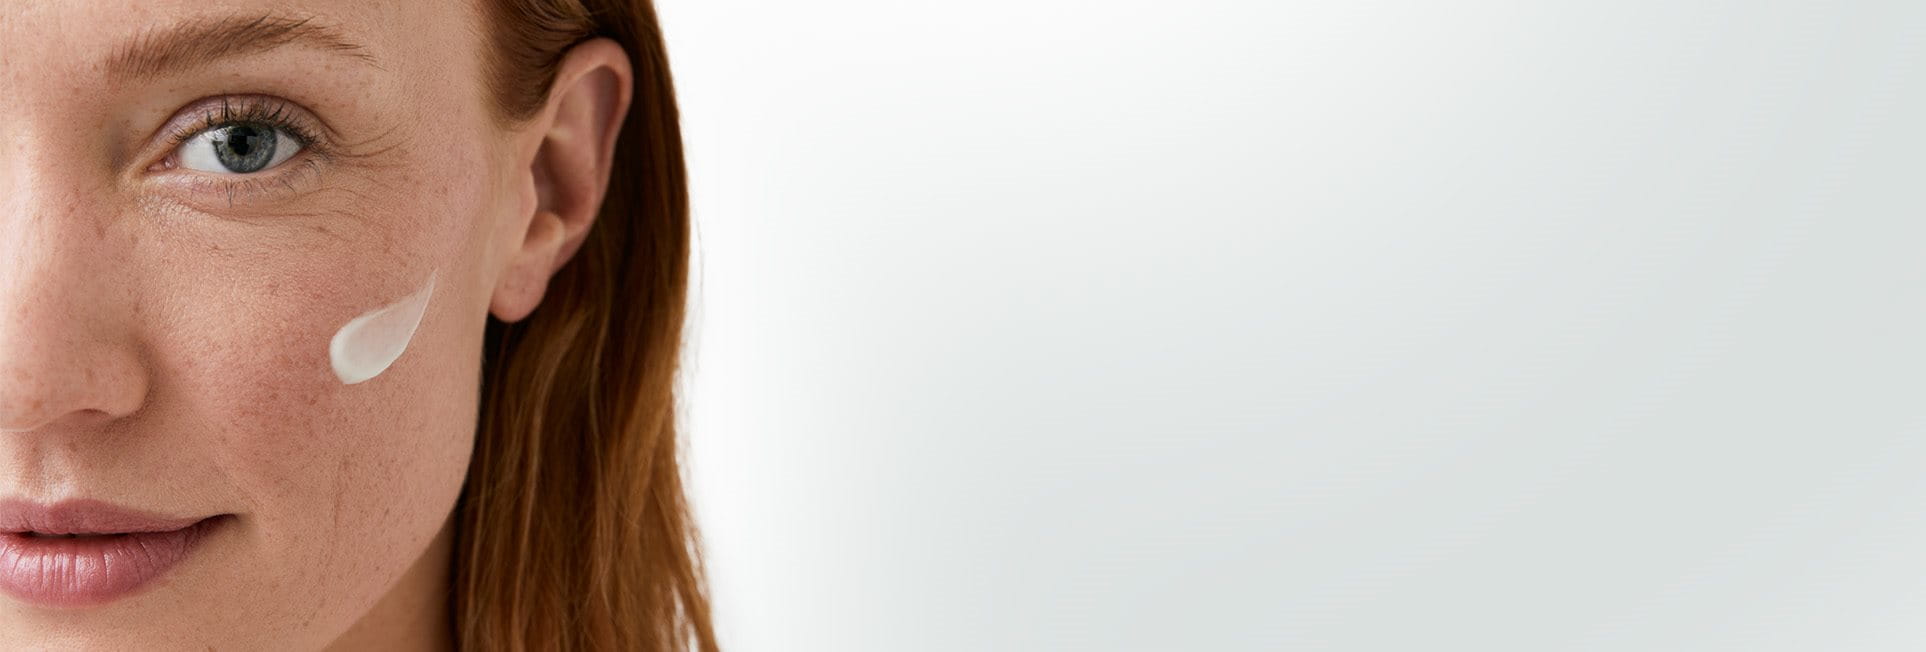 Gros plan du visage d&rsquo;une femme mannequin aux cheveux roux courts, avec sur sa joue gauche une touche de produit en crème.